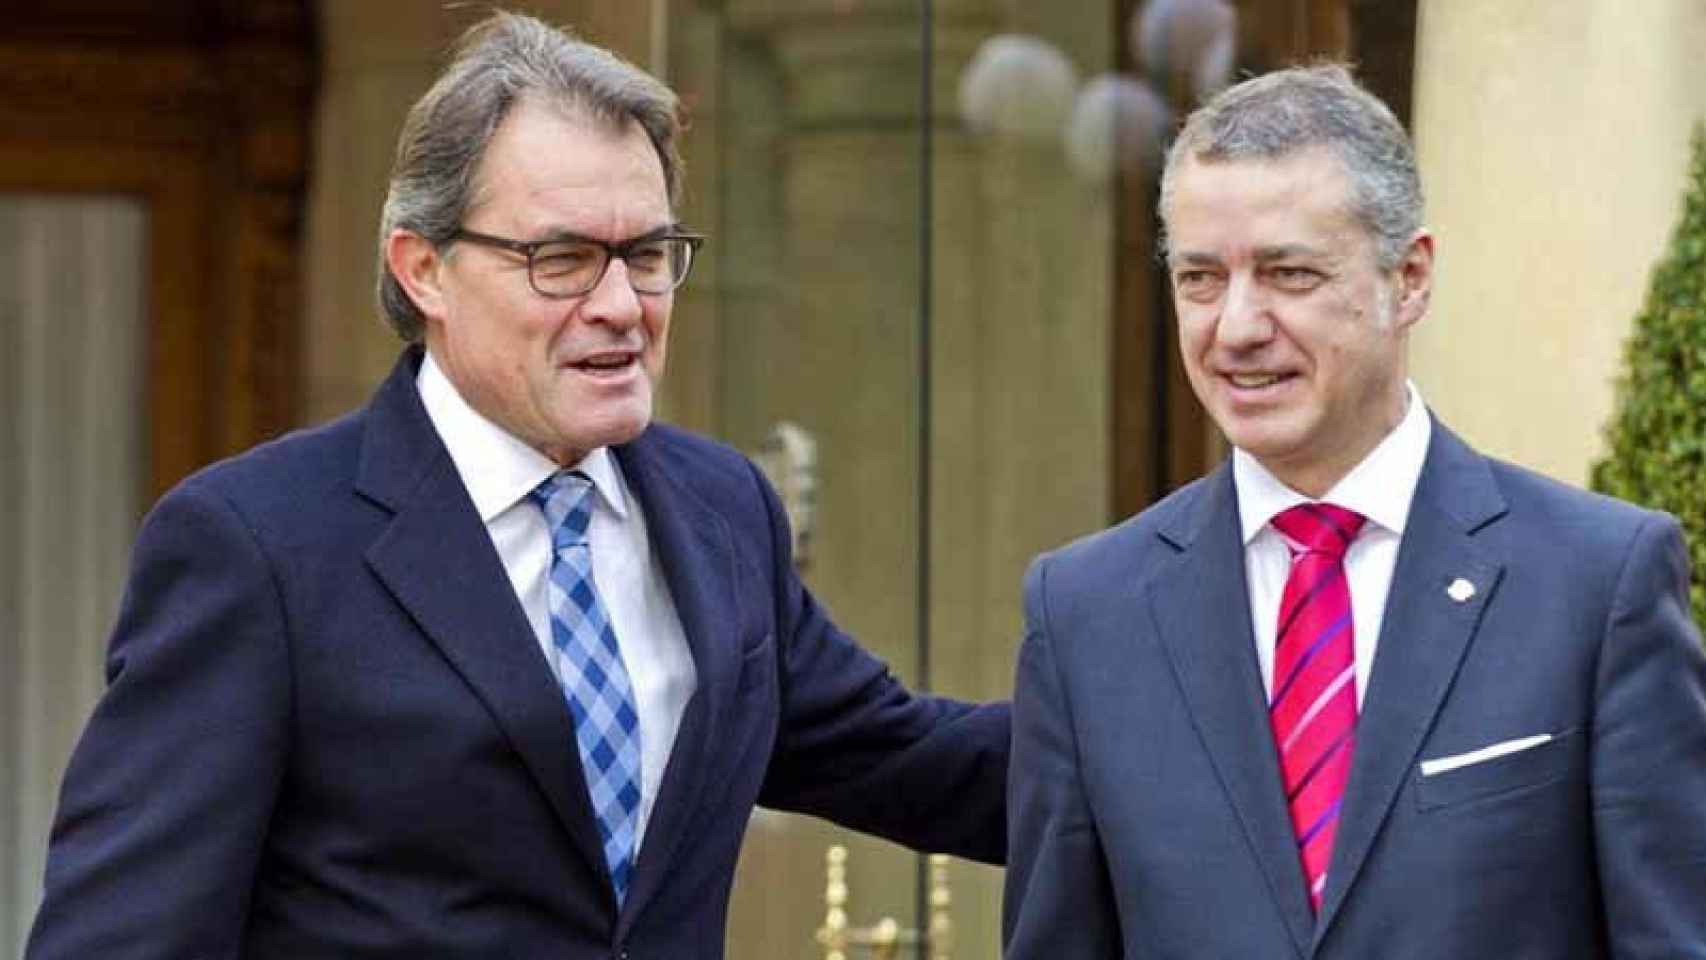 El lendakari, Iñigo Urkullu (d), y el expresidente de la Generalitat Artur Mas durante un encuentro en Ajuria Enea, en 2015.